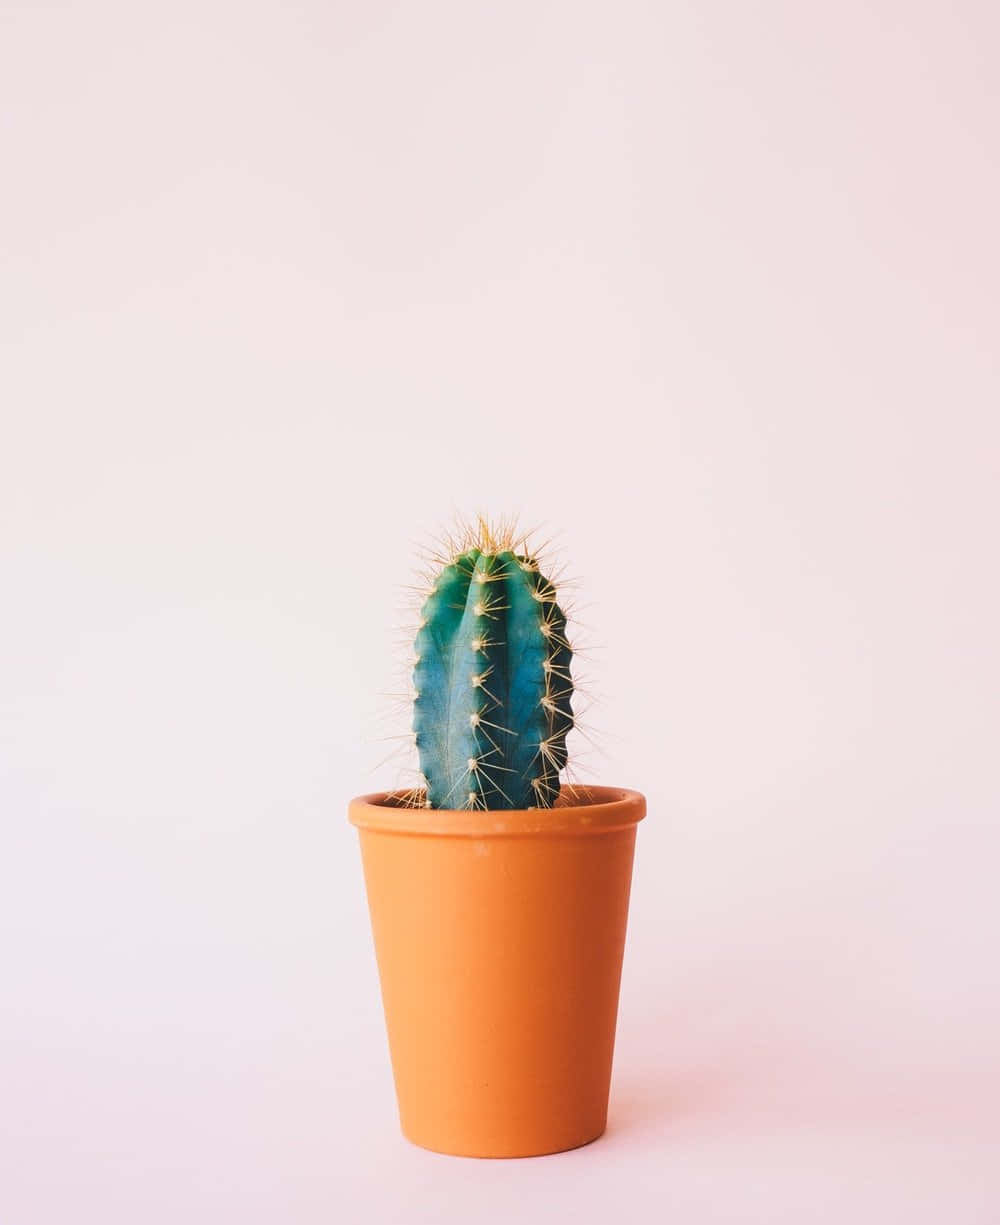 Eccellentisilhouette Di Cactus In Contrasto Con Lo Sfondo Vibrante Del Deserto.